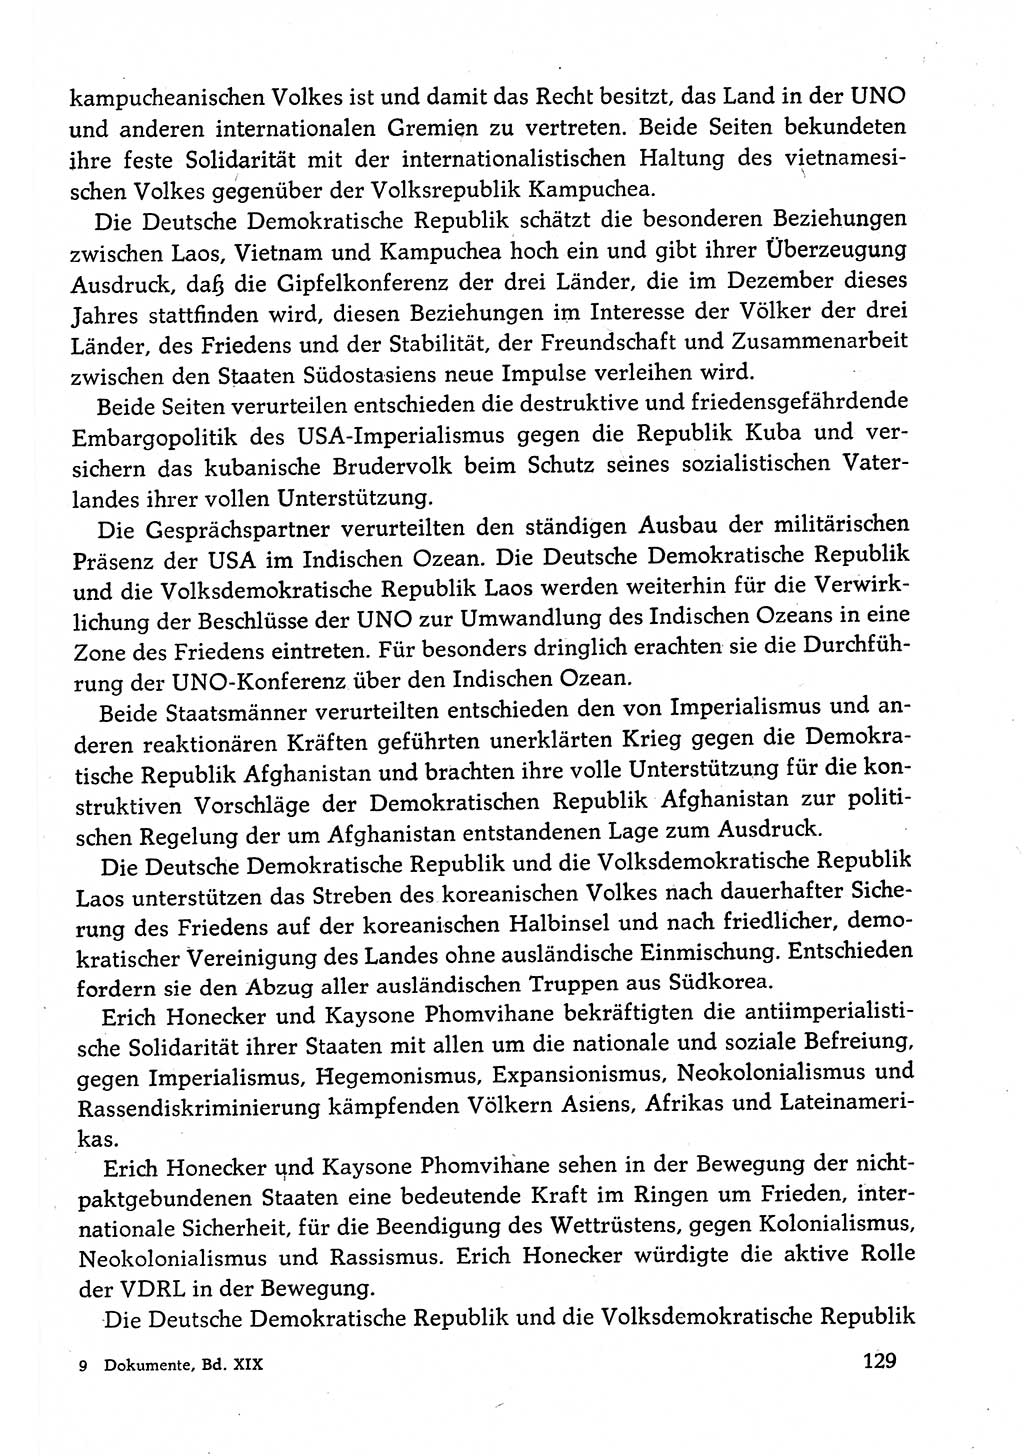 Dokumente der Sozialistischen Einheitspartei Deutschlands (SED) [Deutsche Demokratische Republik (DDR)] 1982-1983, Seite 129 (Dok. SED DDR 1982-1983, S. 129)